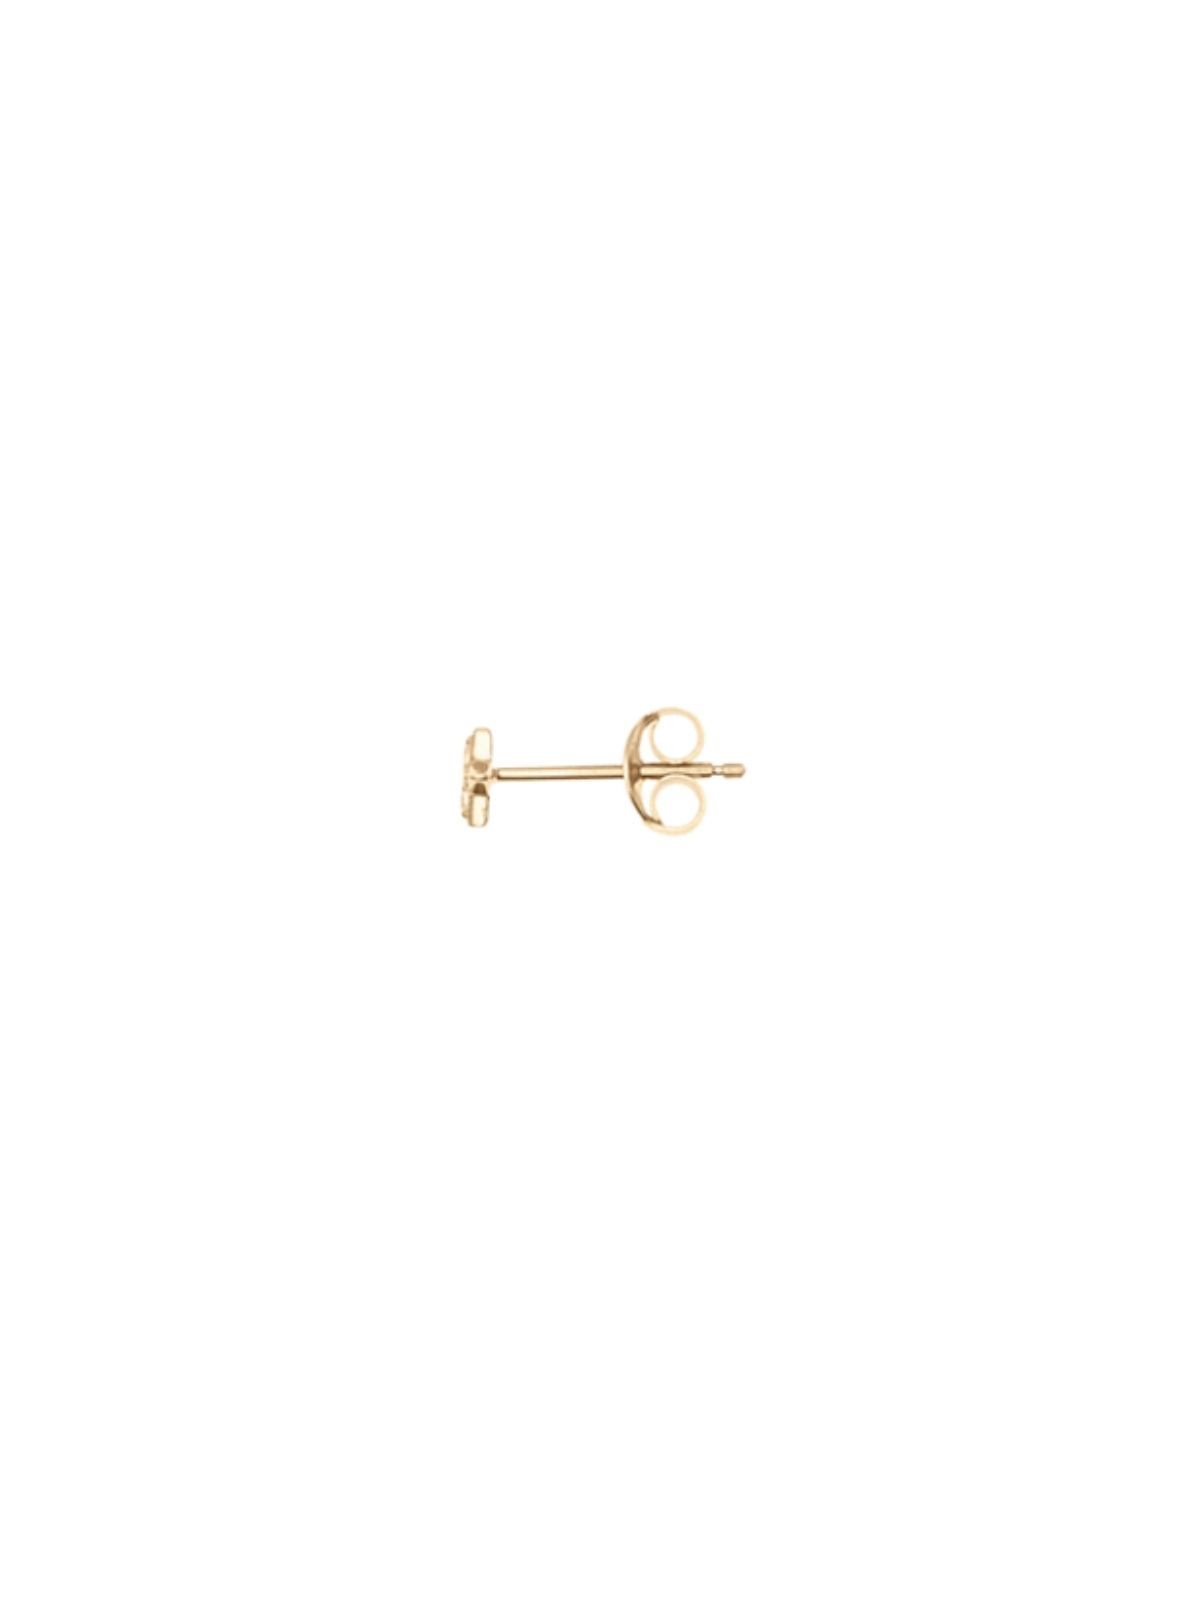 14k Gold Venus Earrings - Single (Pair $398) Earrings By Charlotte 